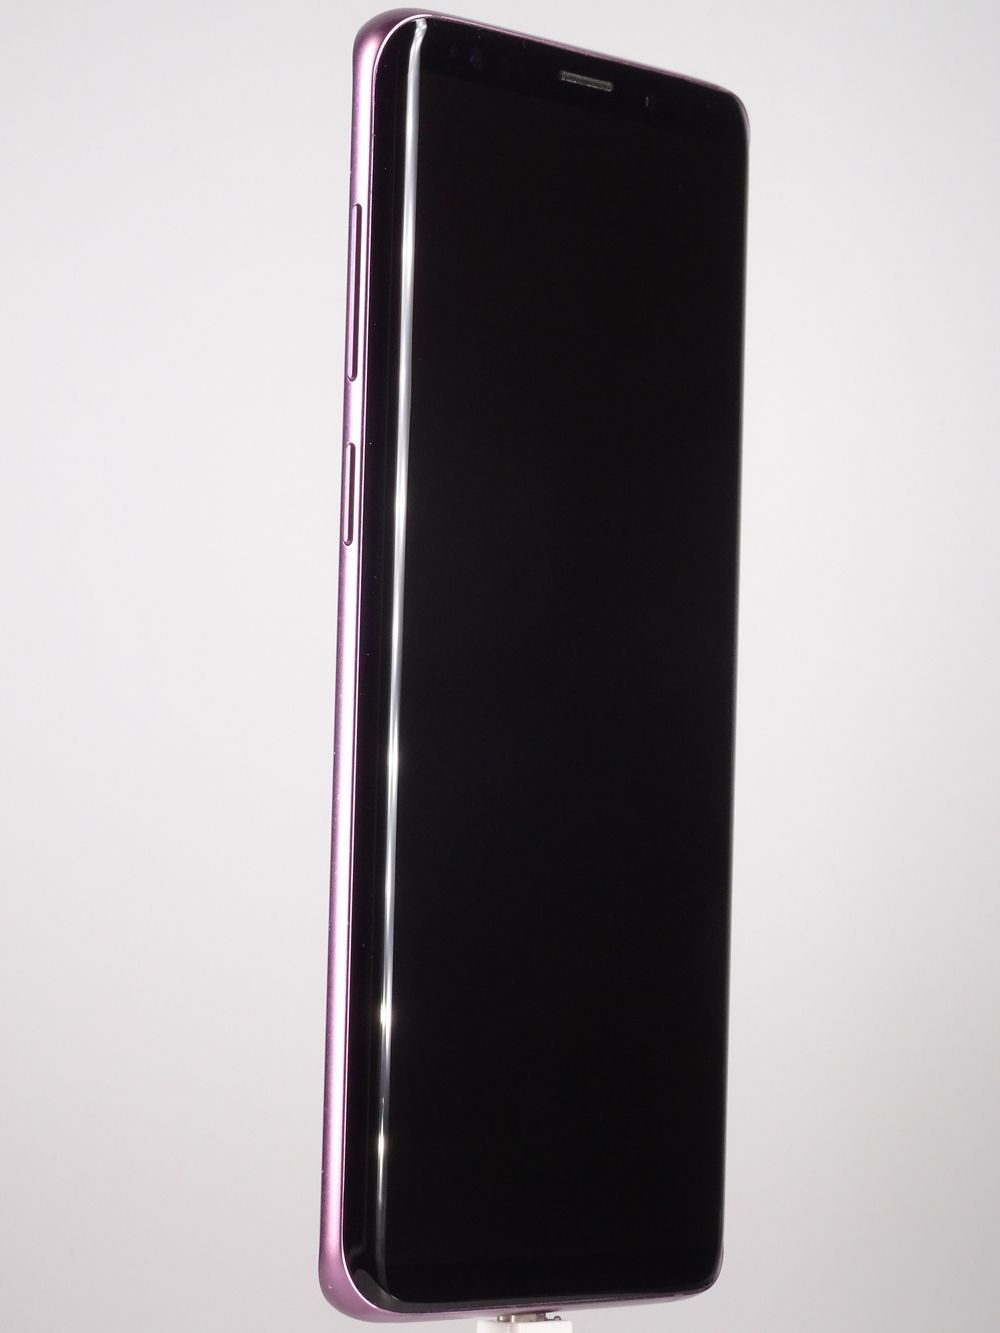 Мобилен телефон Samsung, Galaxy S9 Plus, 64 GB, Purple,  Като нов